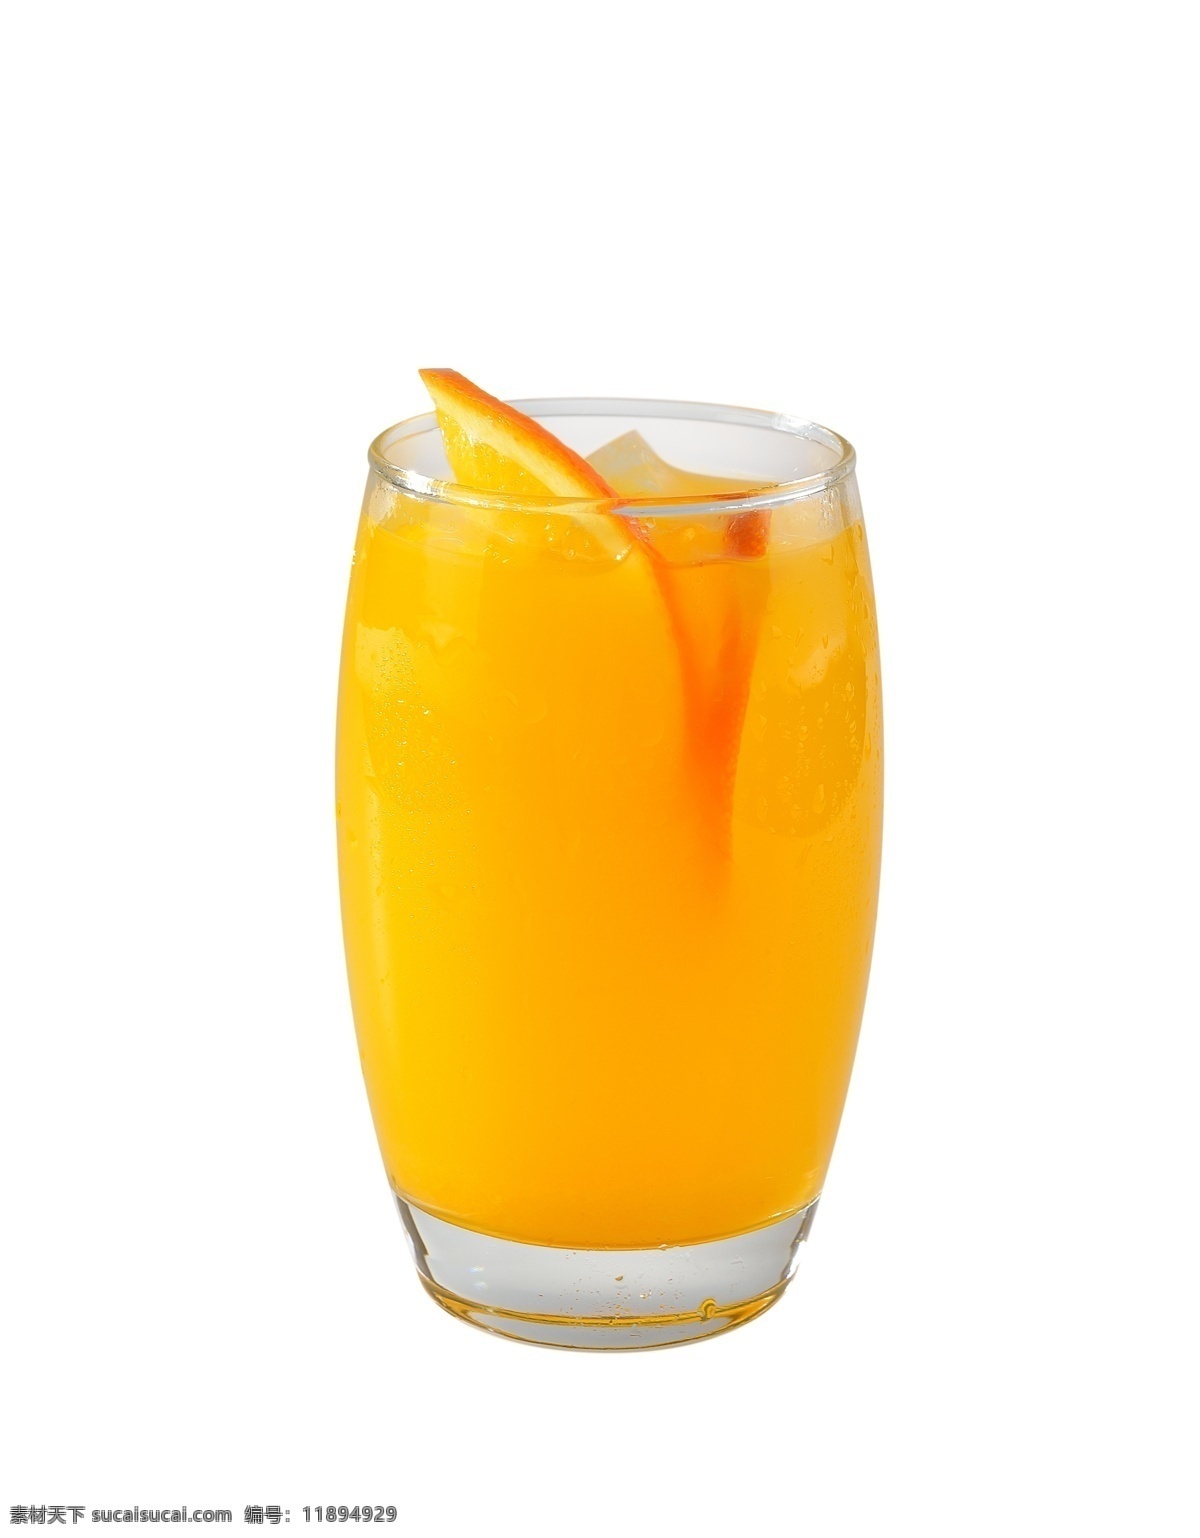 玻璃杯 里 橙汁 维生素 维c 甜 养颜 美容 脐橙 橙色 冰爽 冰饮 饮料 分层